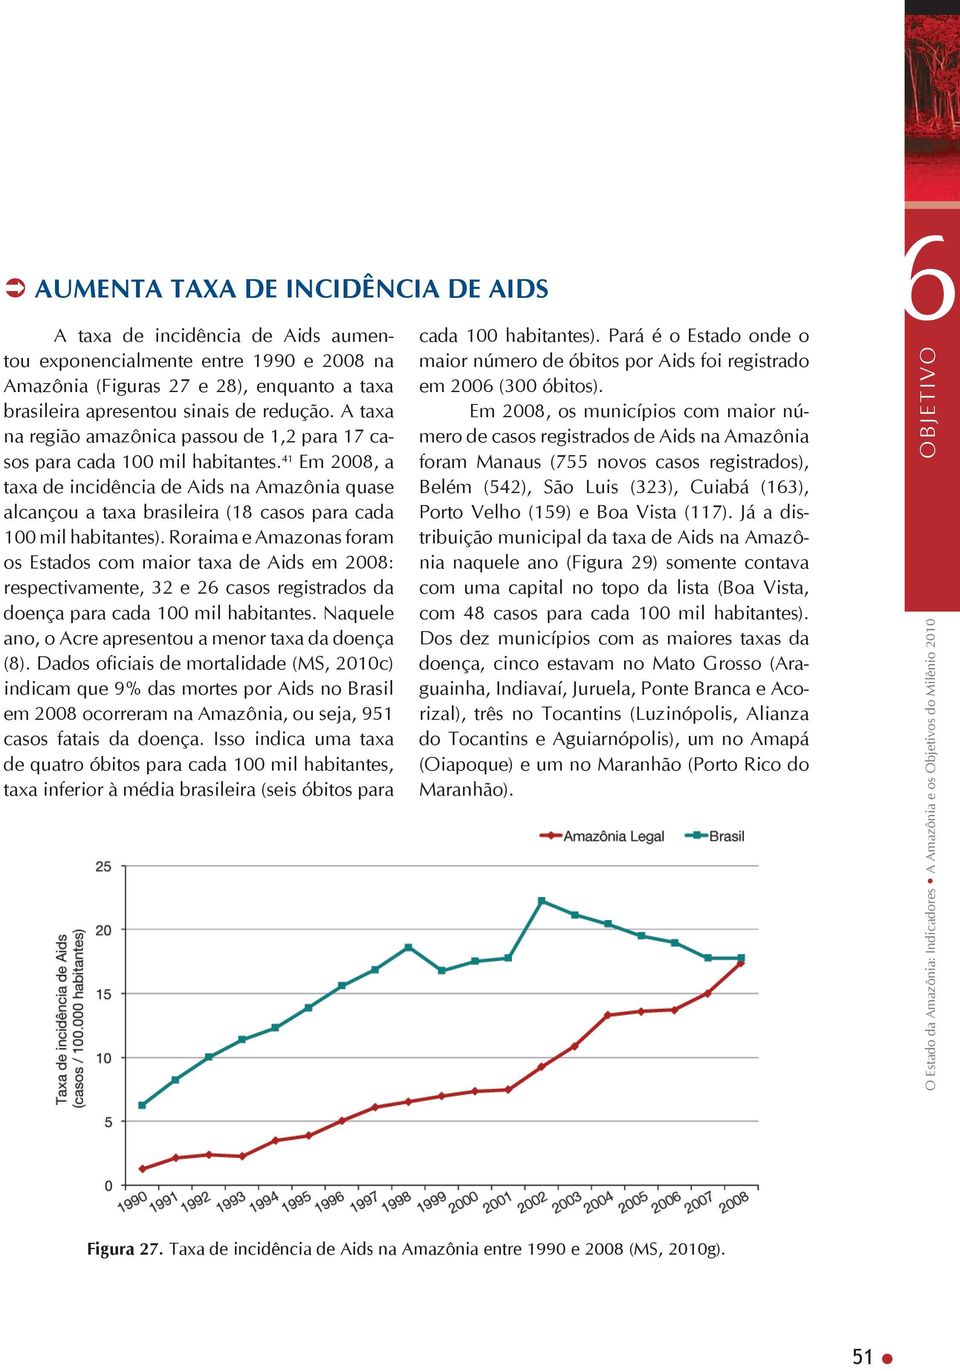 41 Em 2008, a taxa de incidência de Aids na Amazônia quase alcançou a taxa brasileira (18 casos para cada 100 mil habitantes).